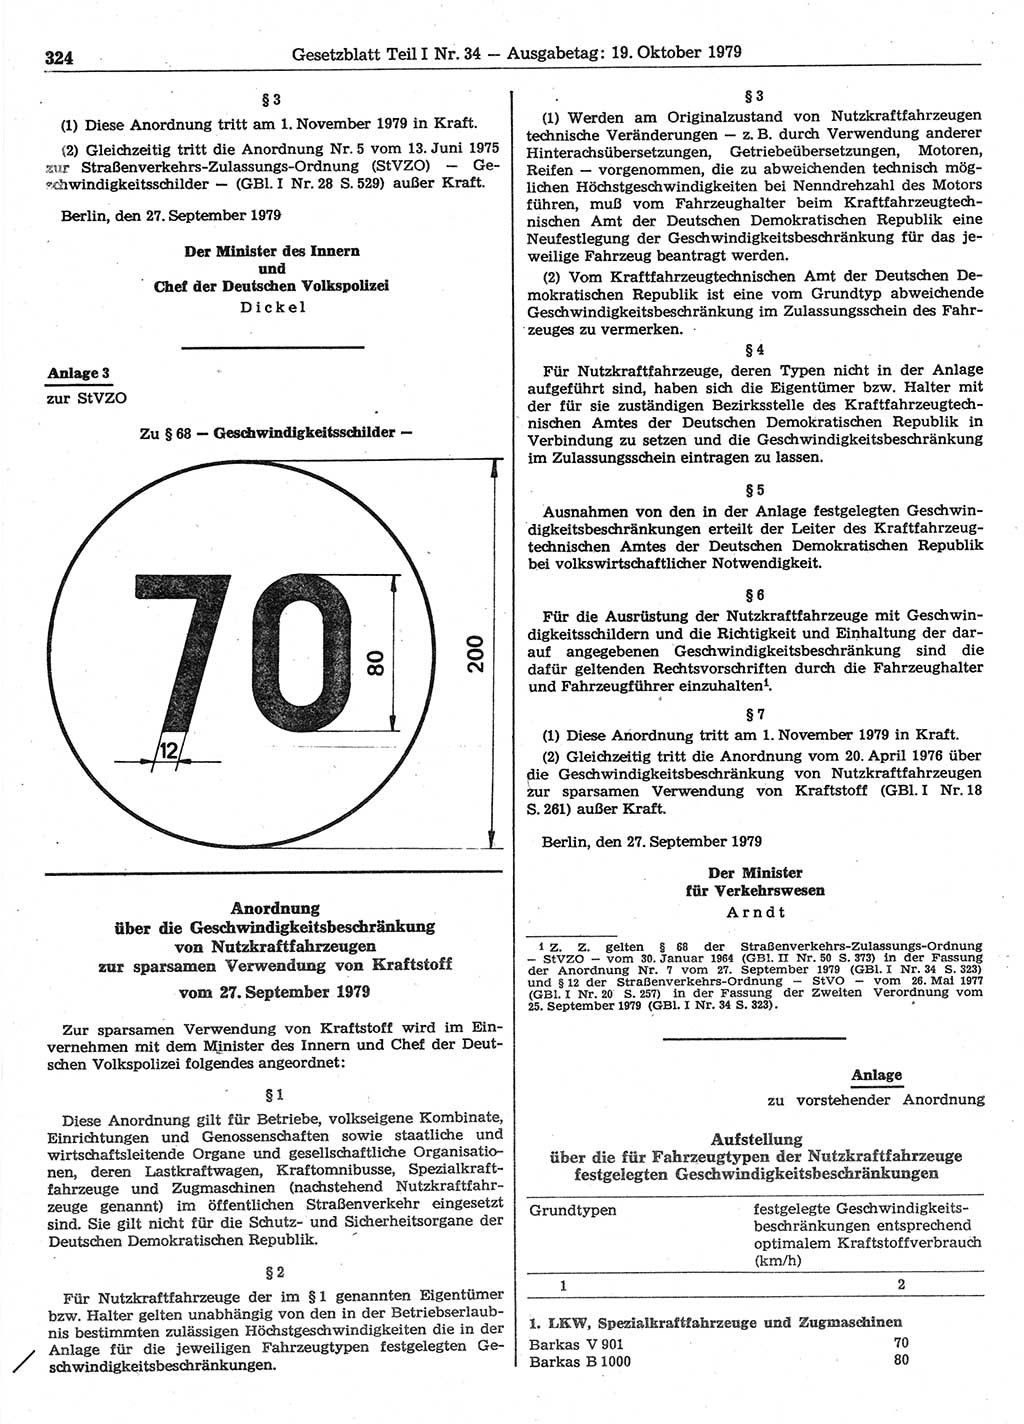 Gesetzblatt (GBl.) der Deutschen Demokratischen Republik (DDR) Teil Ⅰ 1979, Seite 324 (GBl. DDR Ⅰ 1979, S. 324)